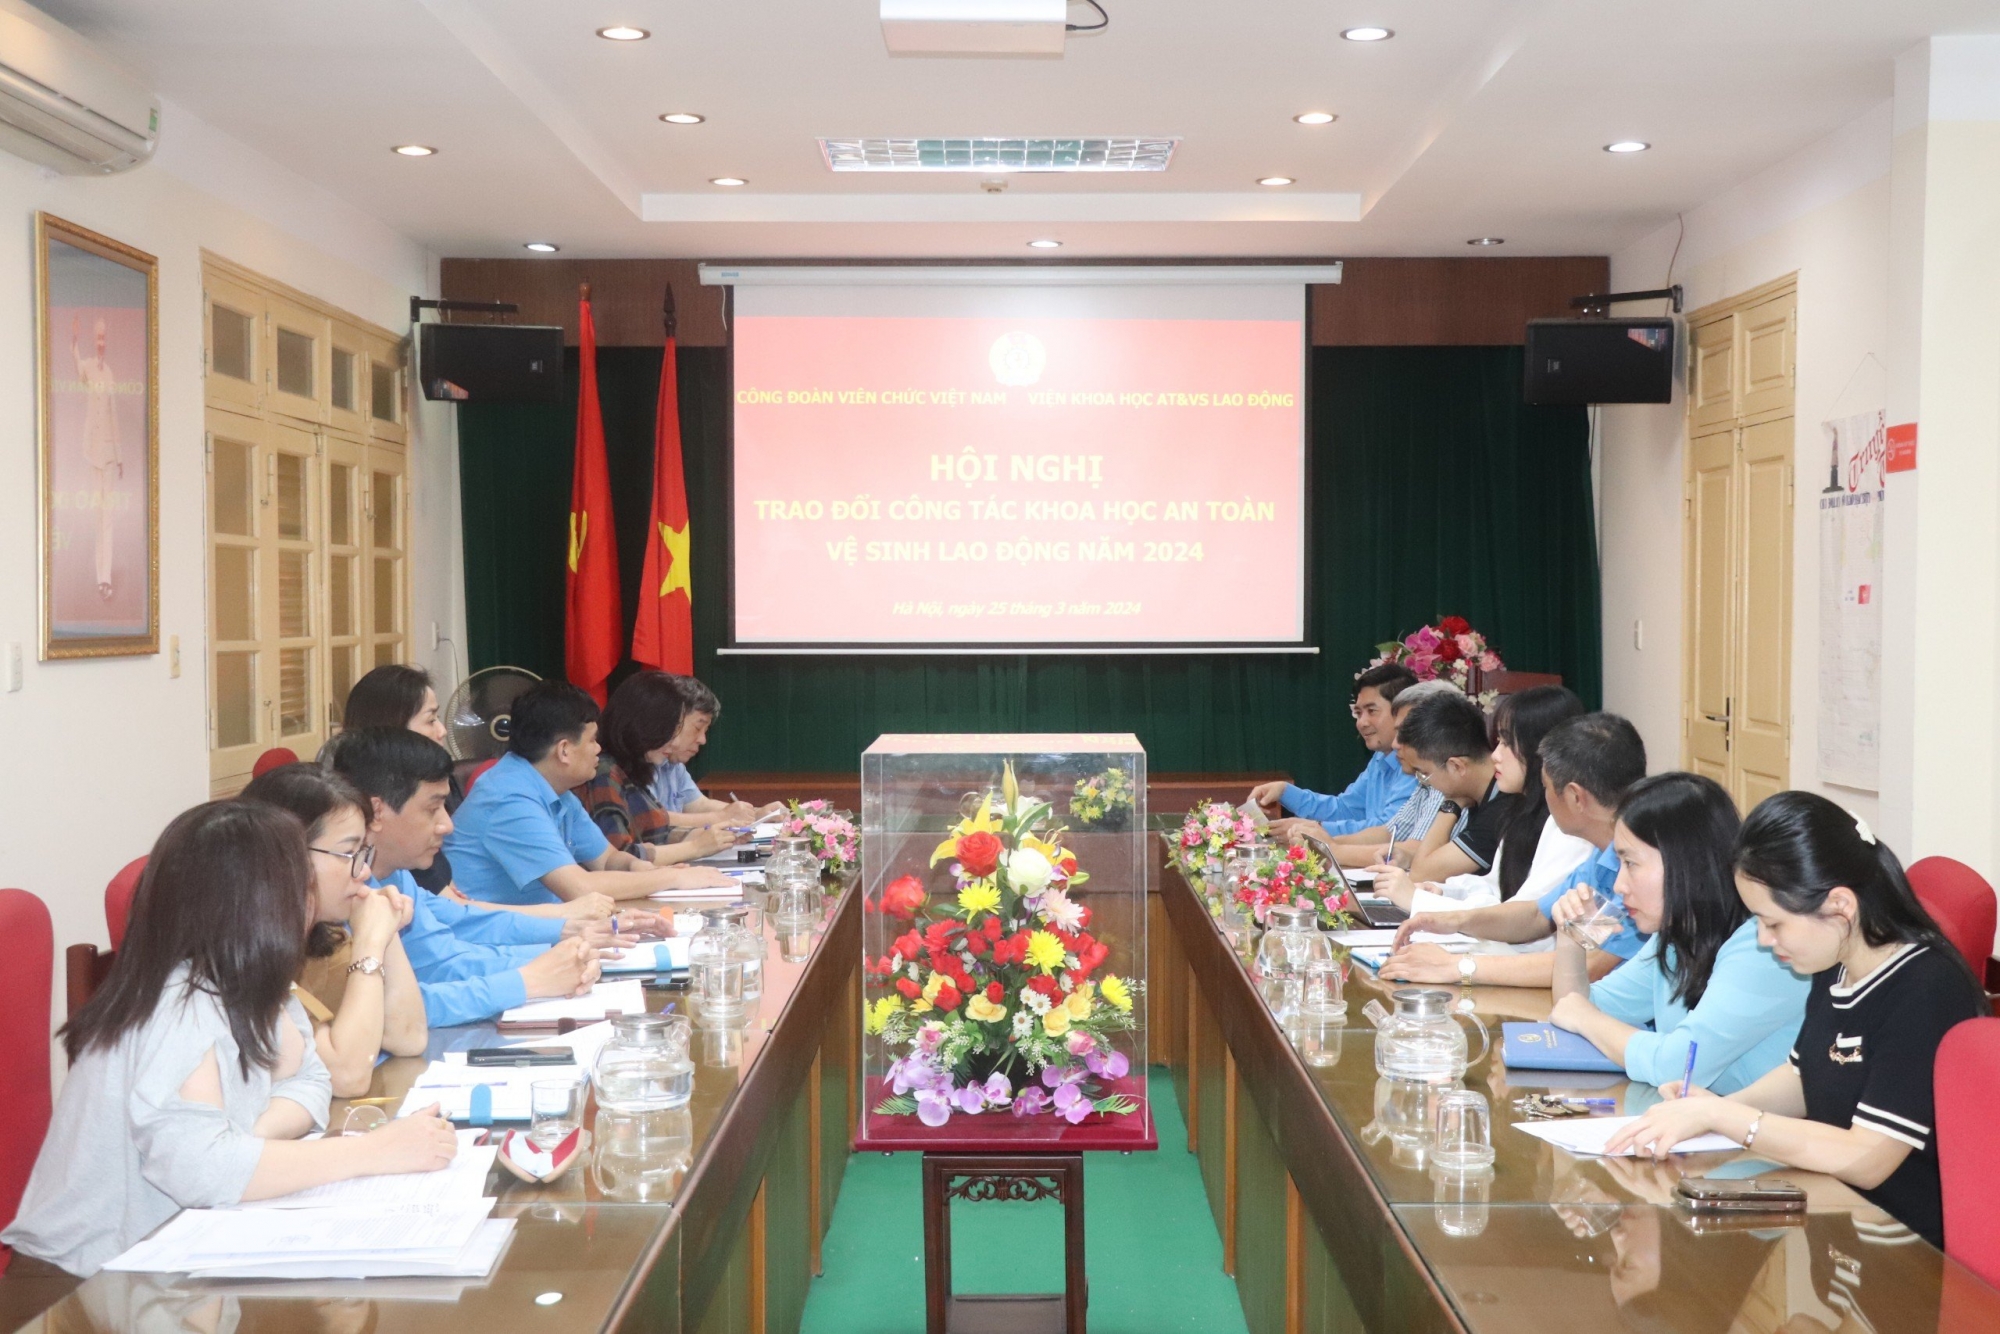 Công đoàn Viên chức Việt Nam tổ chức Hội nghị trao đổi, đề xuất các hoạt động khoa học công nghệ và tập huấn về công tác an toàn vệ sinh lao động